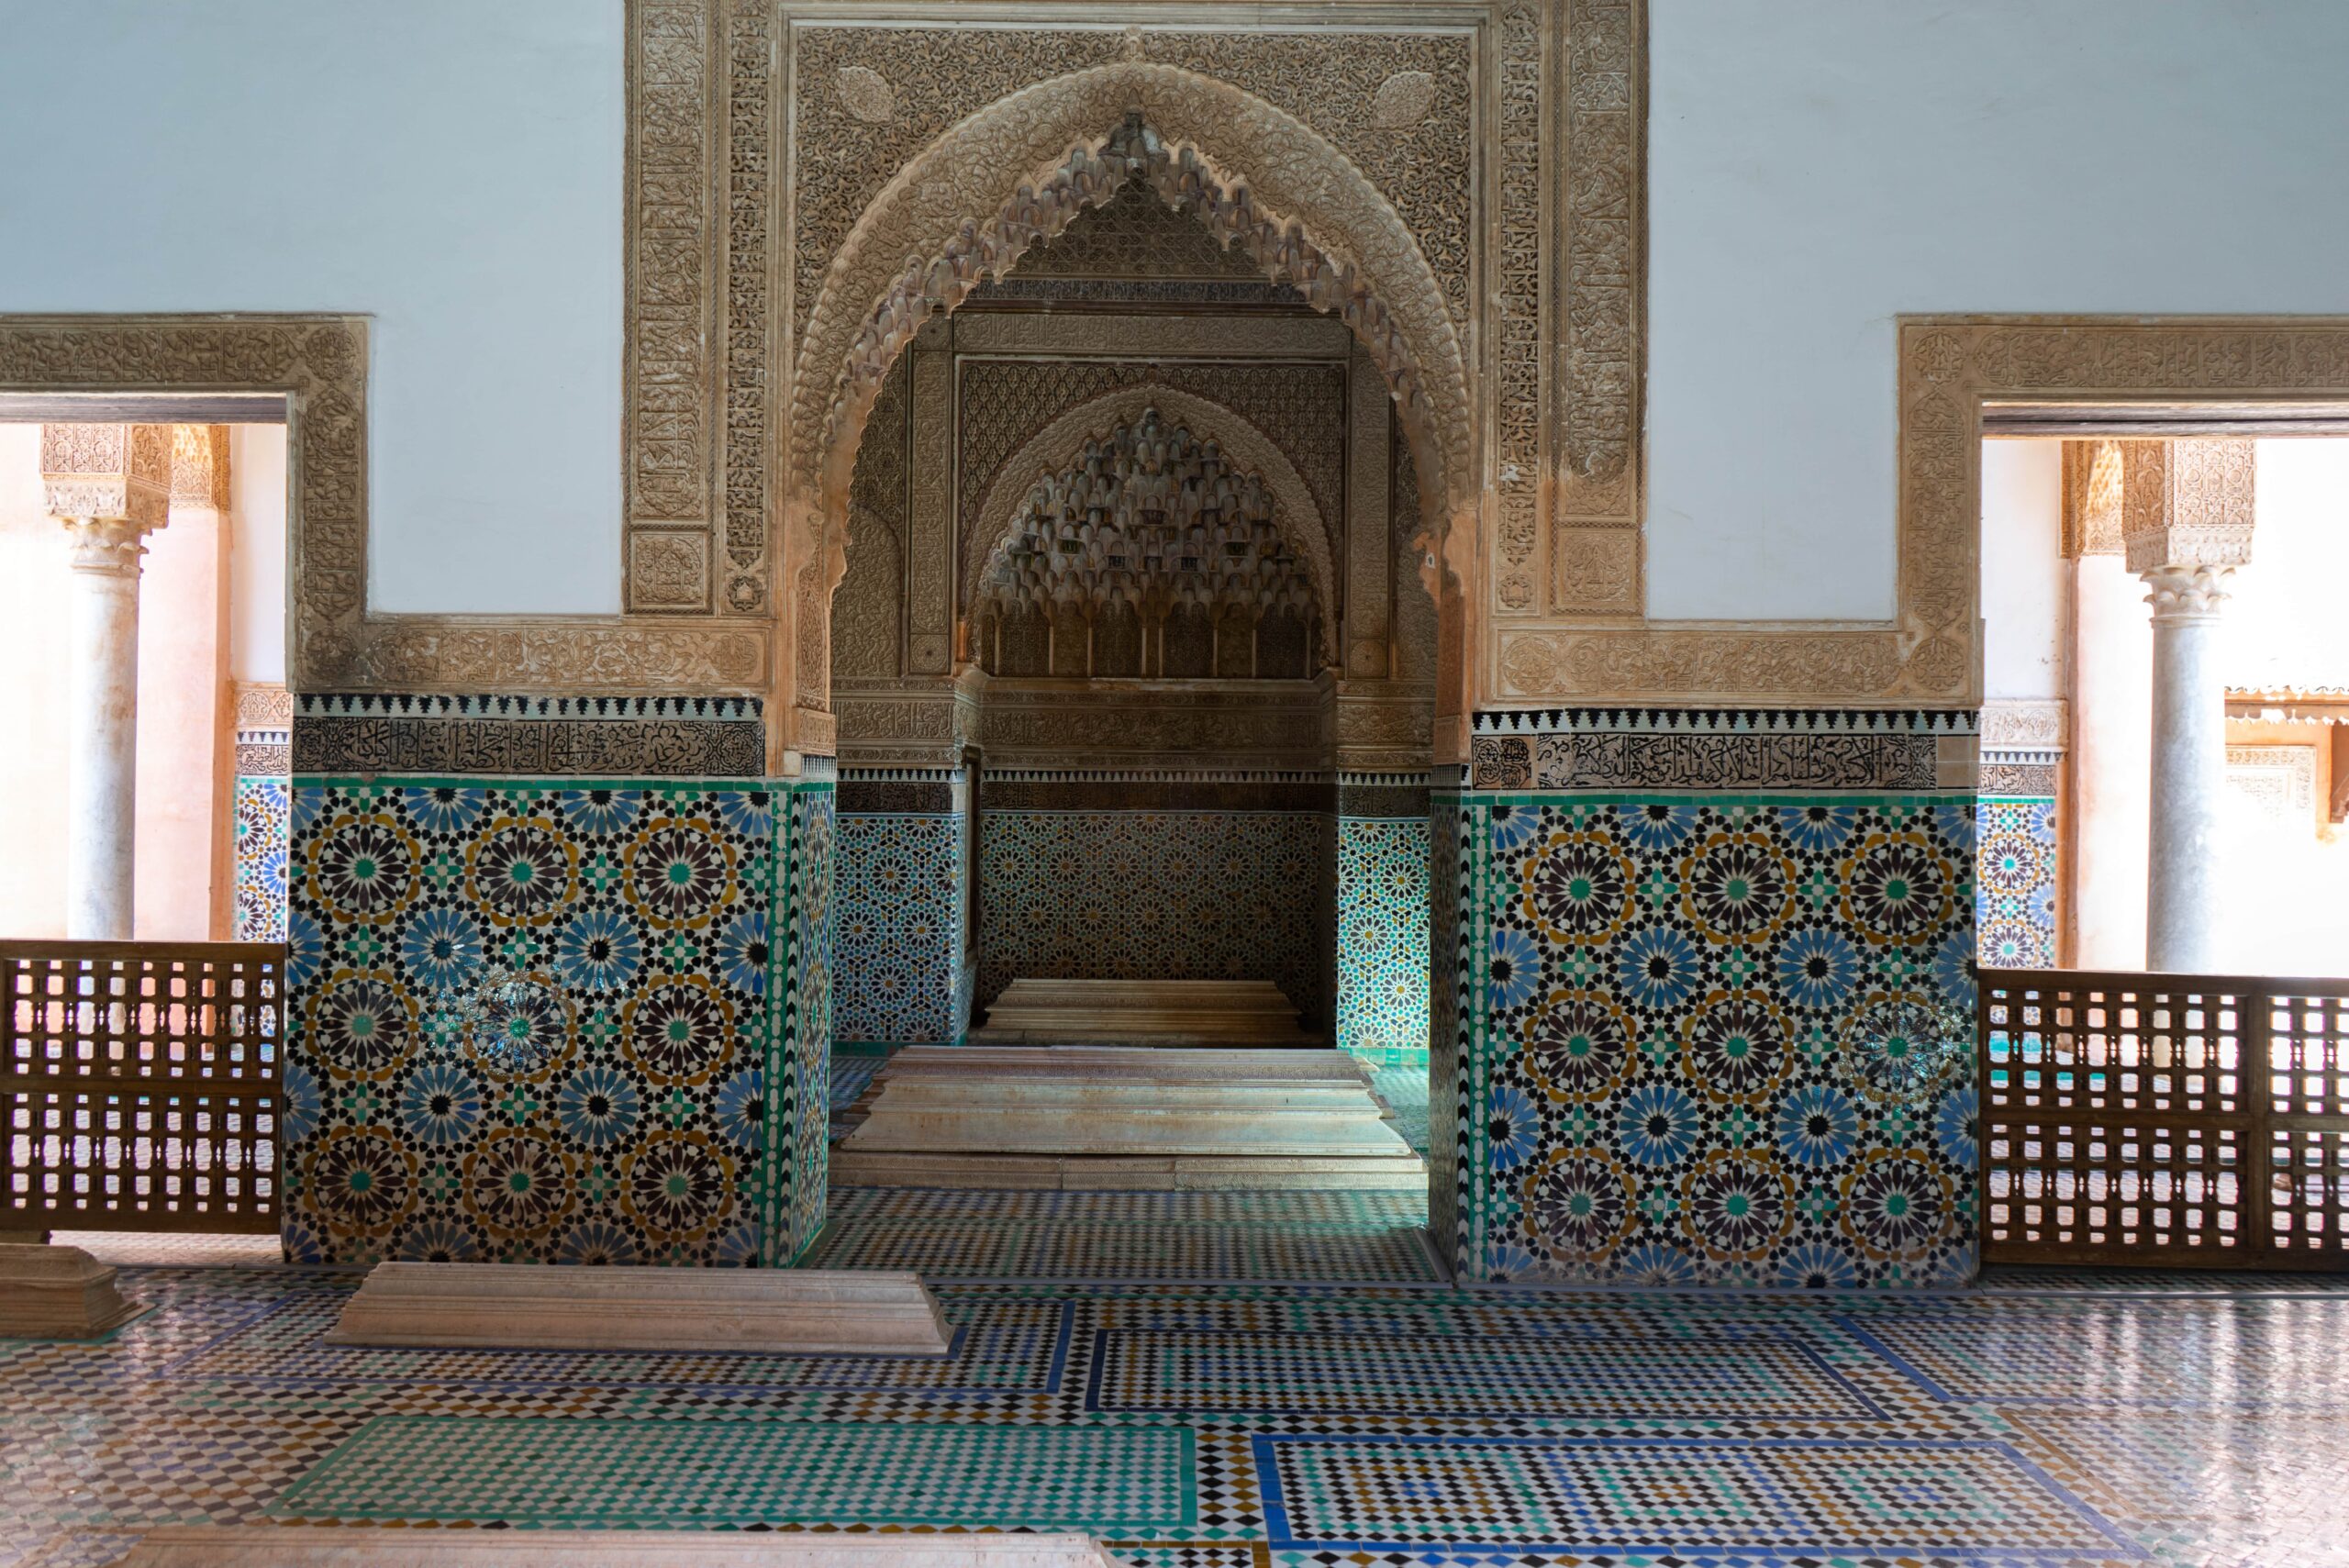 The Saadian Tombs in Marrakech